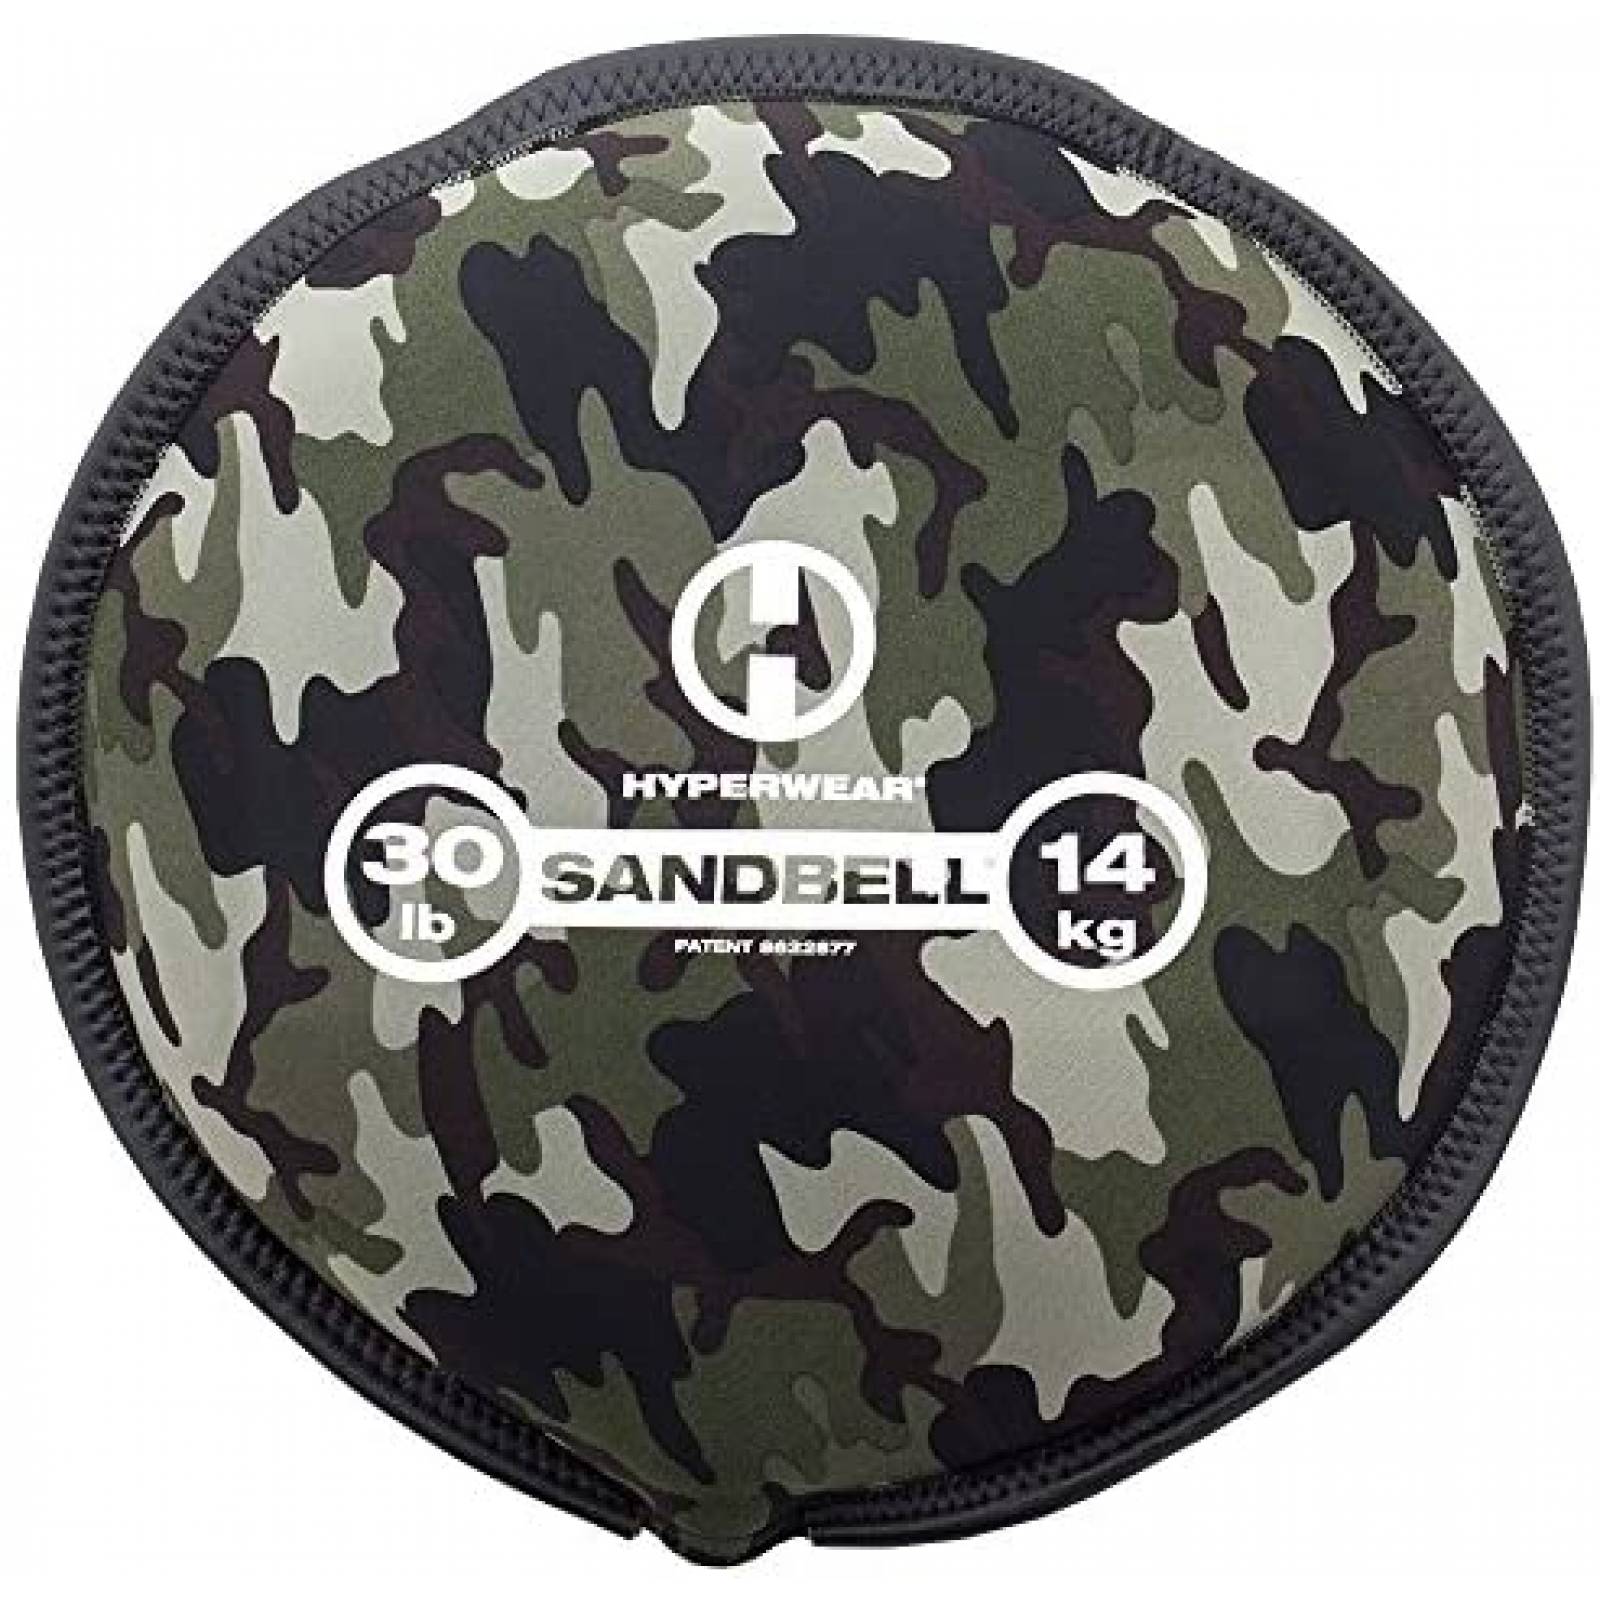 Saco de Arena Hyperwear SandBell de 14 Kg -Camuflaje